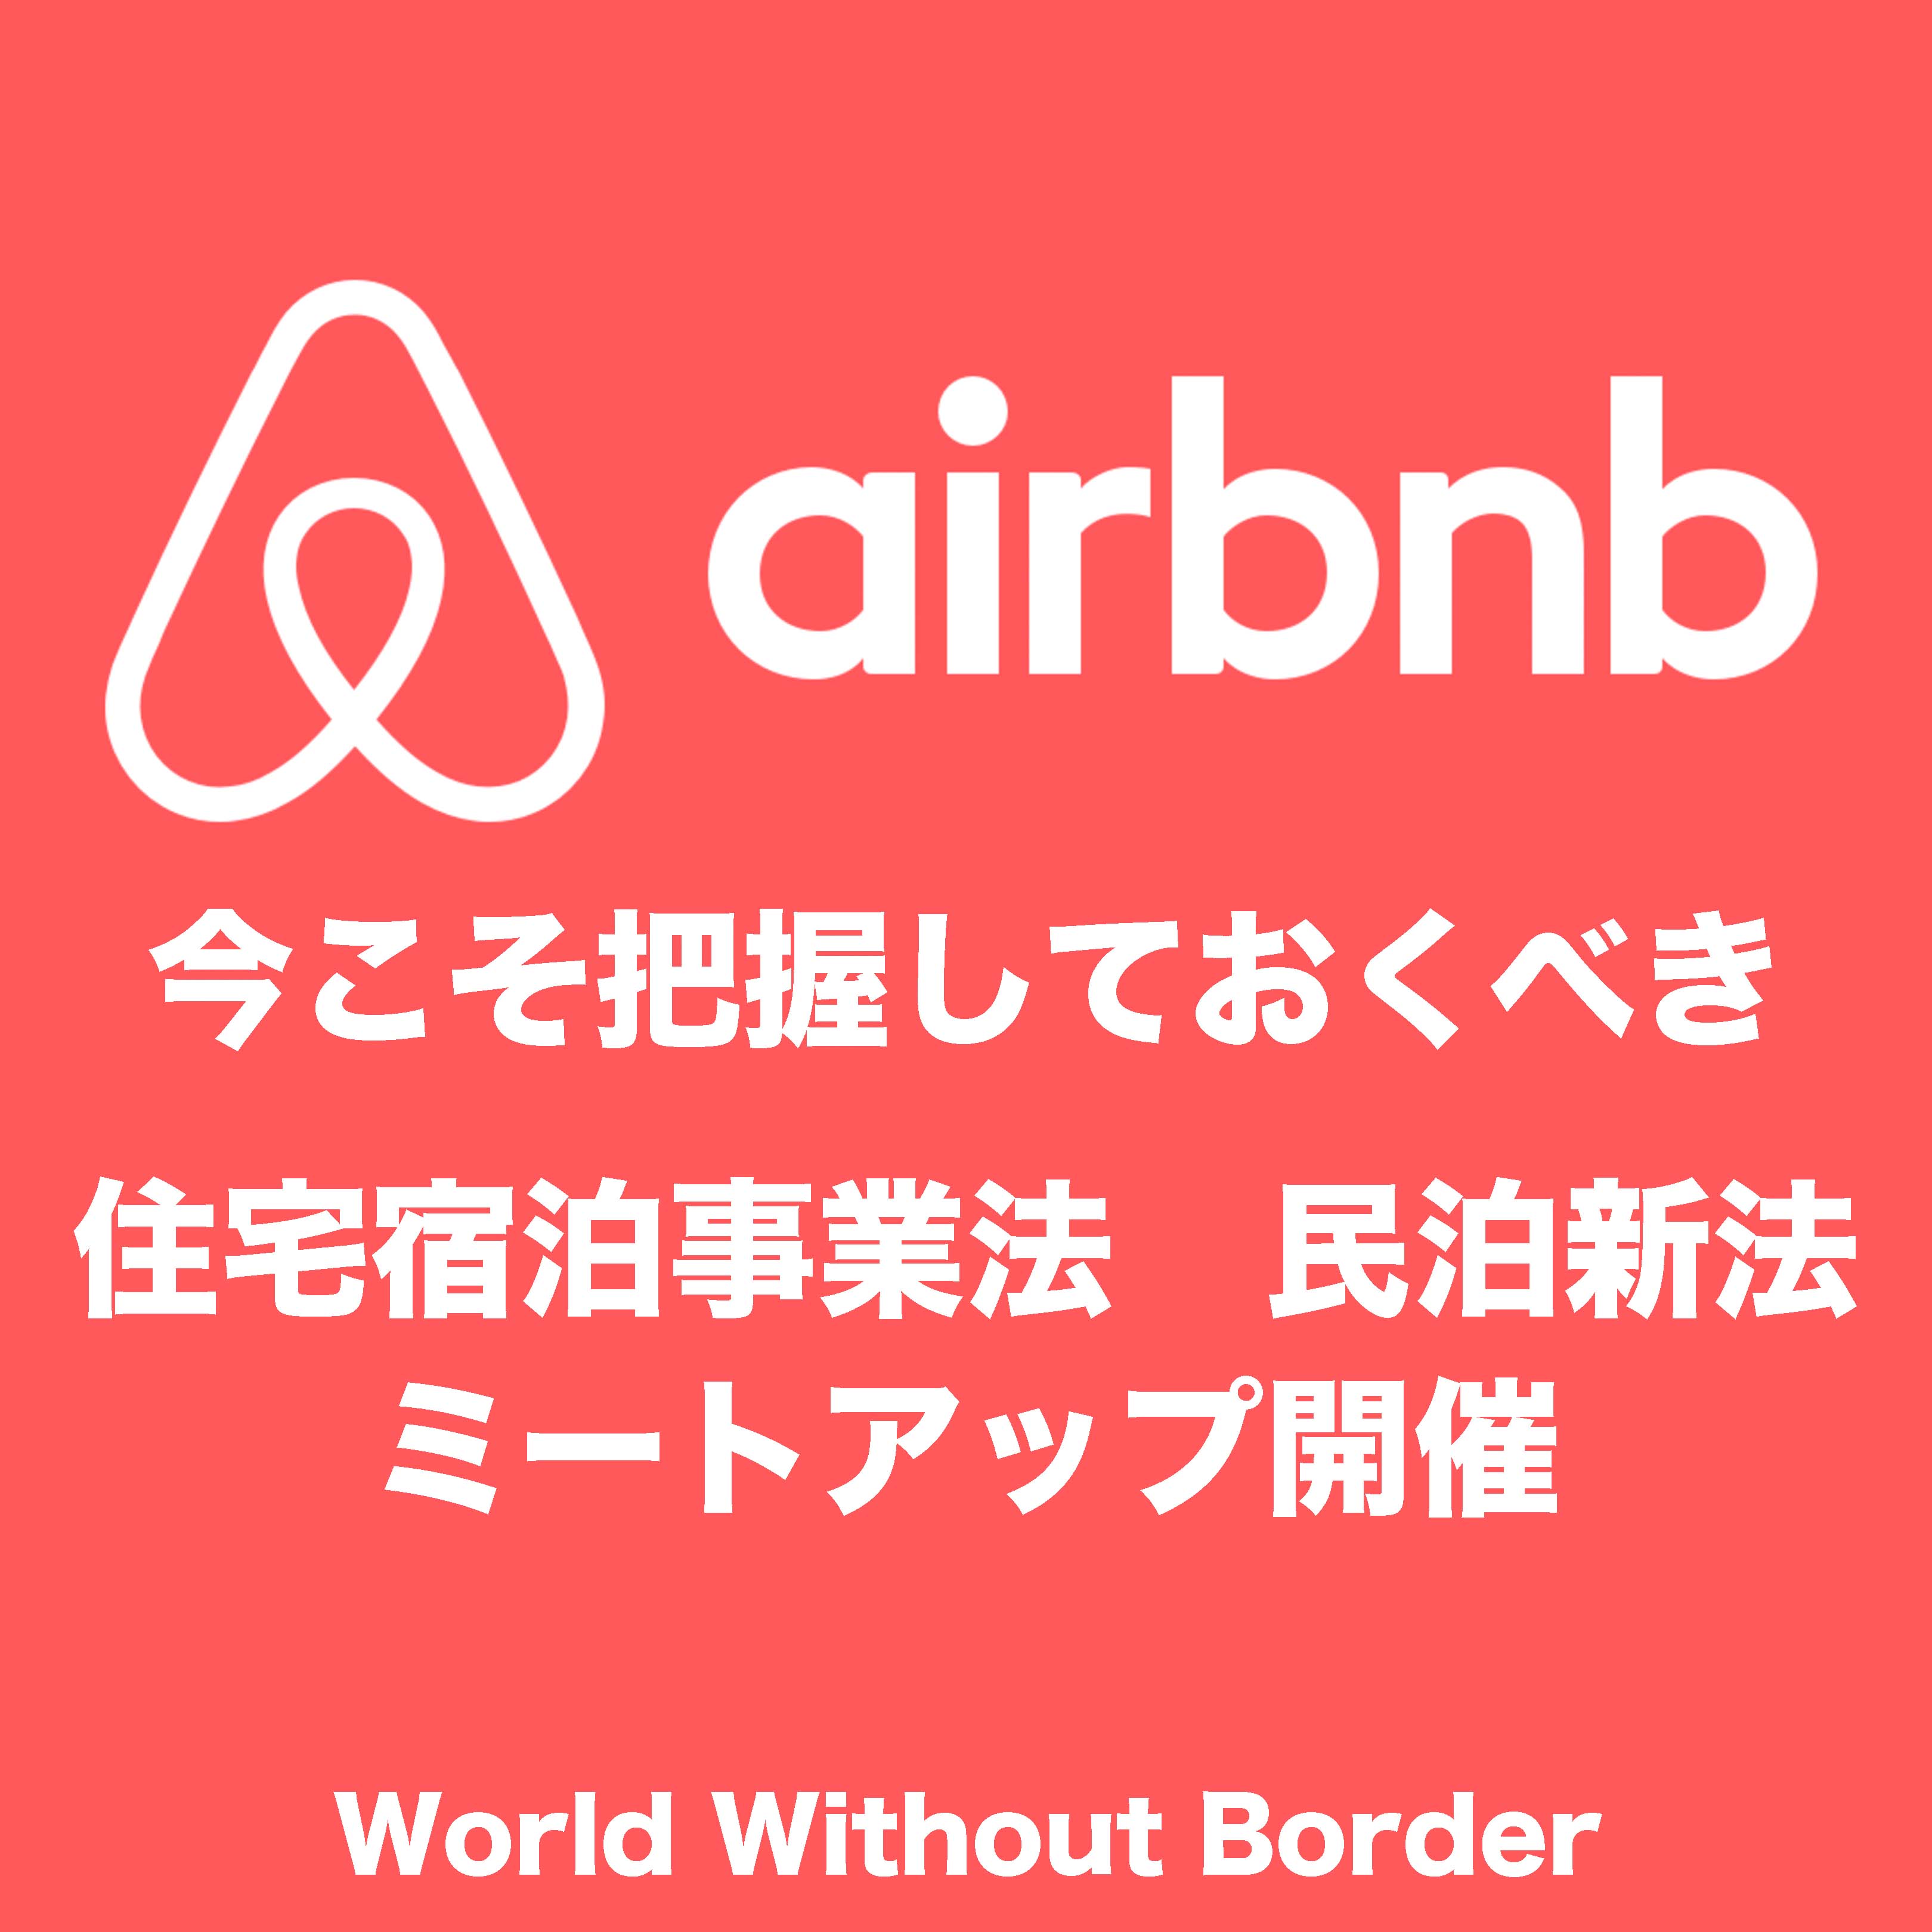 【民泊airbnb】6/17(土)札幌で民泊新法についてのミートアップを開催します